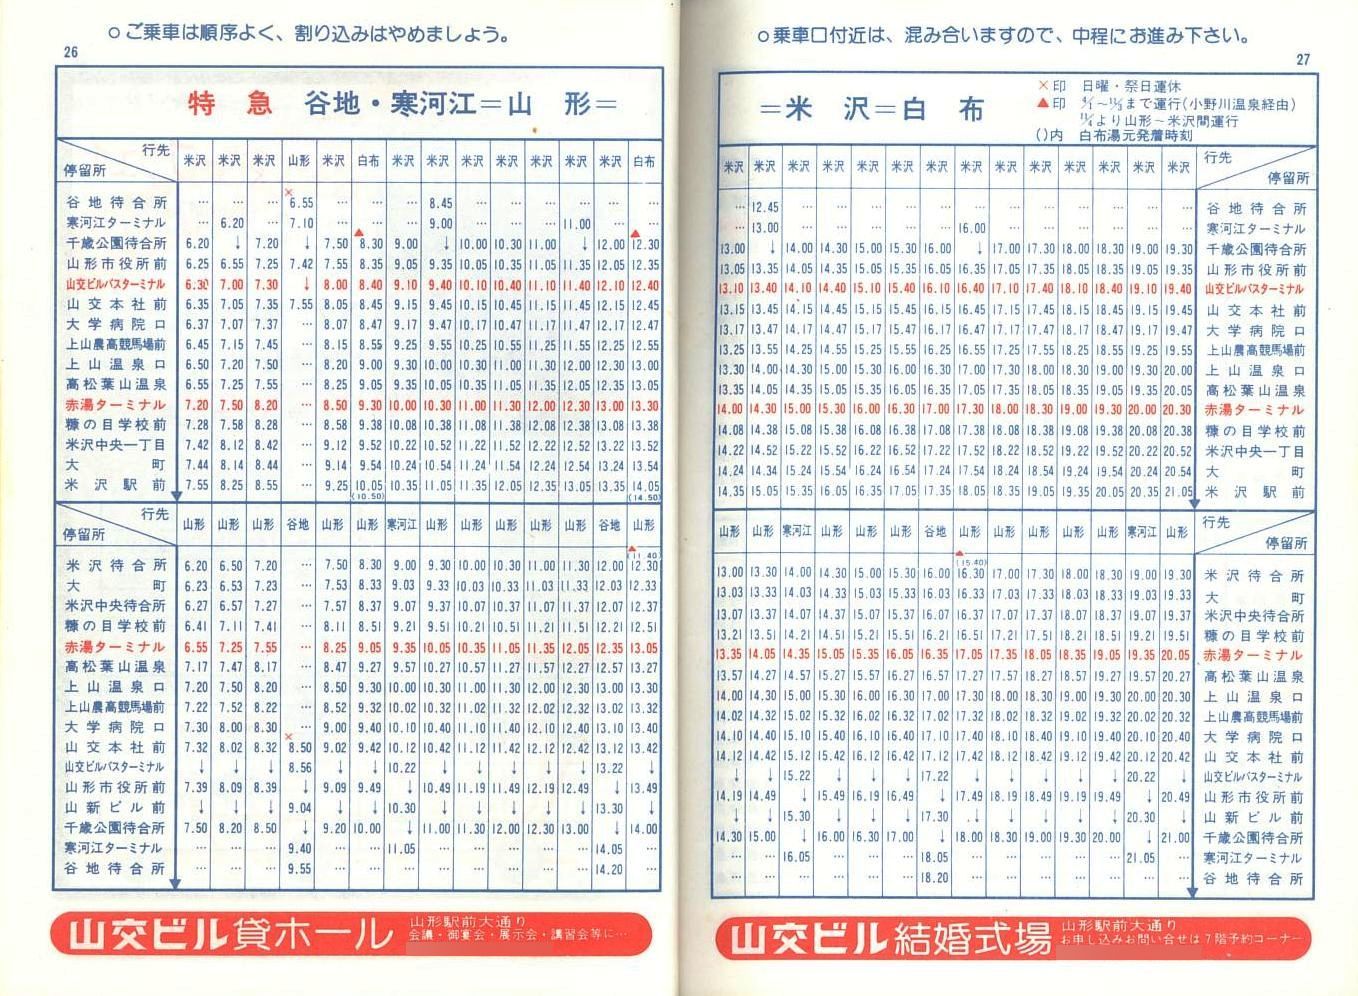 1978-04-01改正_山形交通_冊子時刻表_26-27